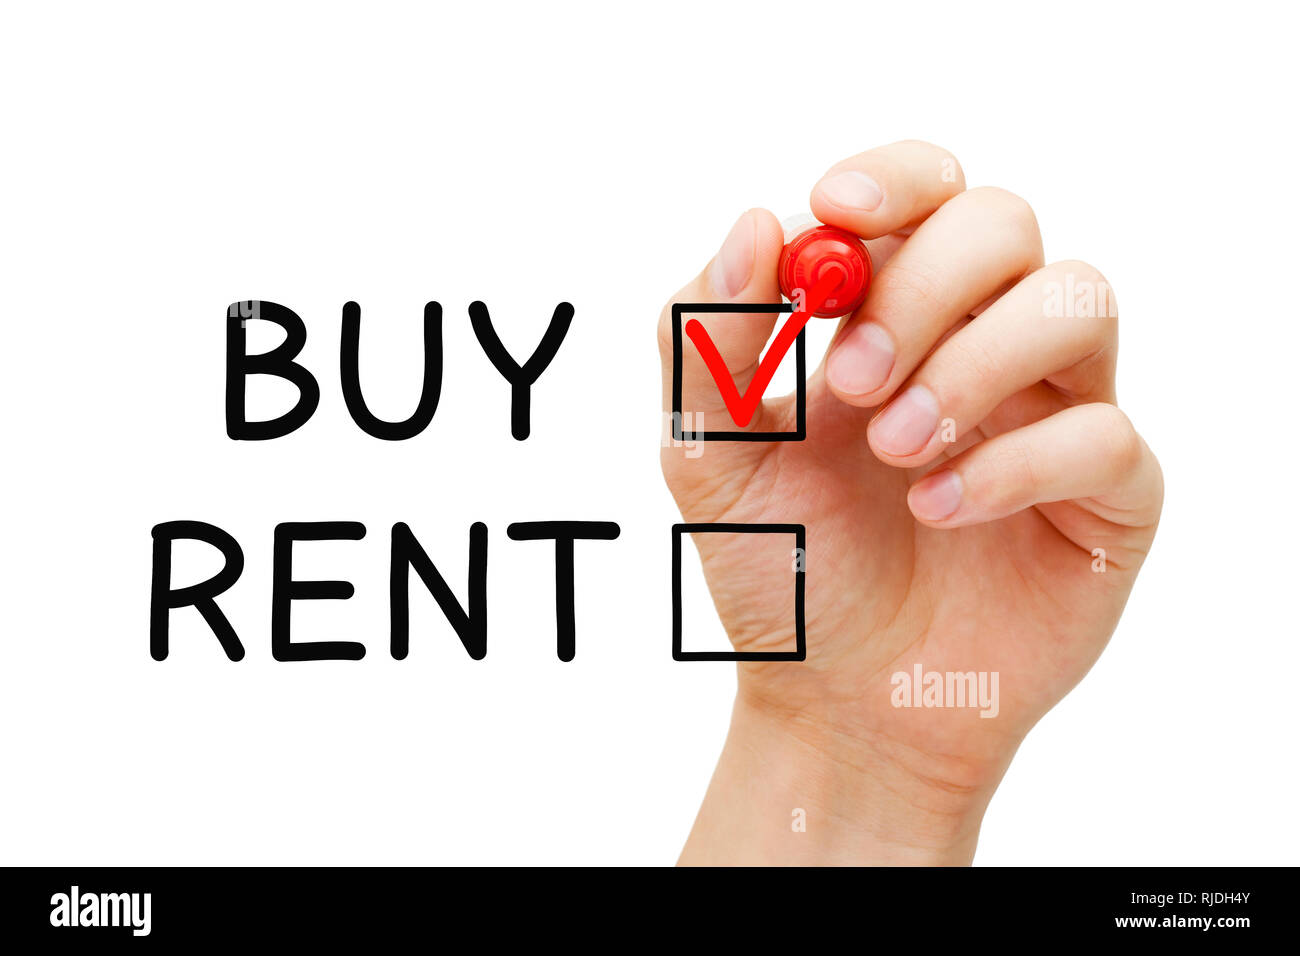 Mano rossa mettendo il segno di spunta sul comprare esprimendo la scelta di acquistare non affittare immobili o altre proprietà. Foto Stock